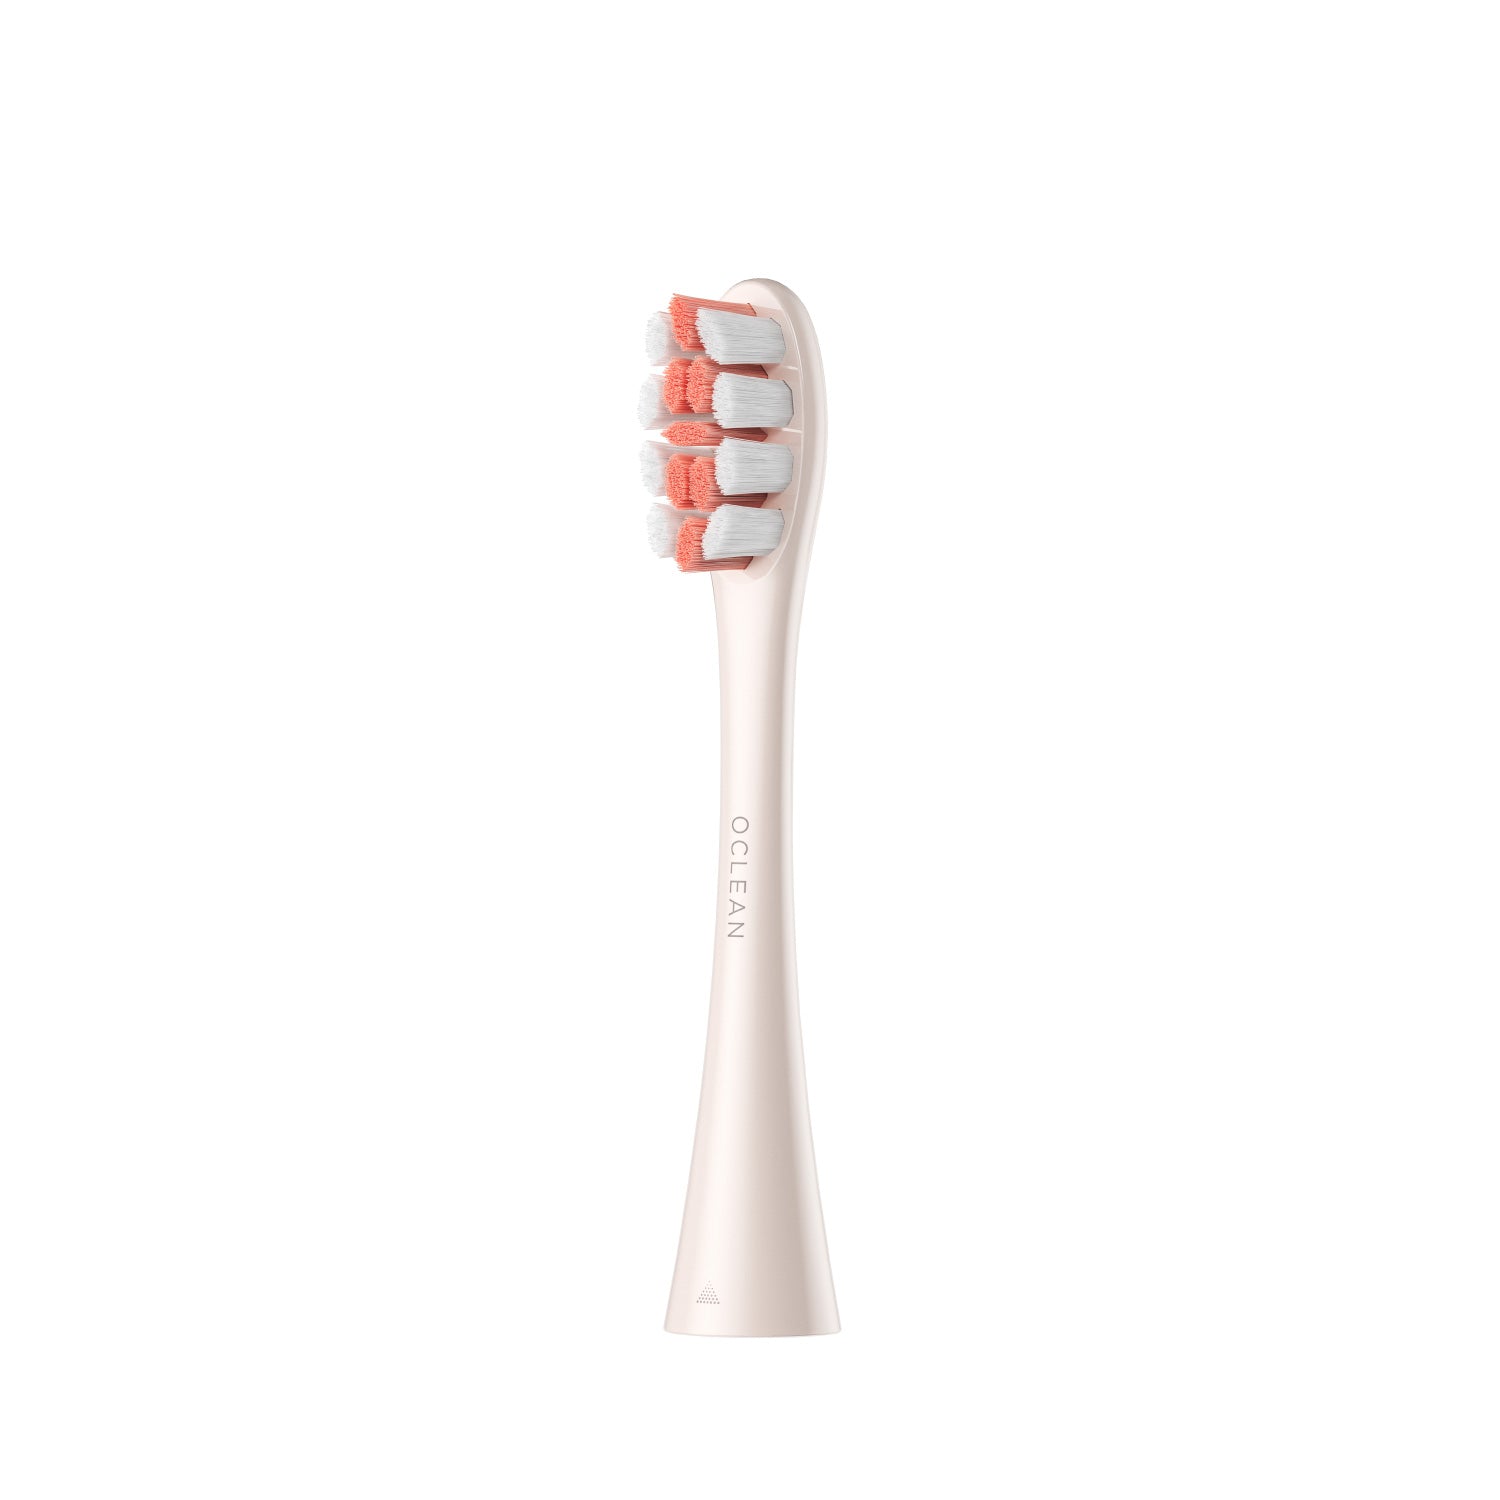 Oclean Ersatzbürste für elektrische Zahnbürste-Toothbrush Replacement Heads-Oclean DE Store